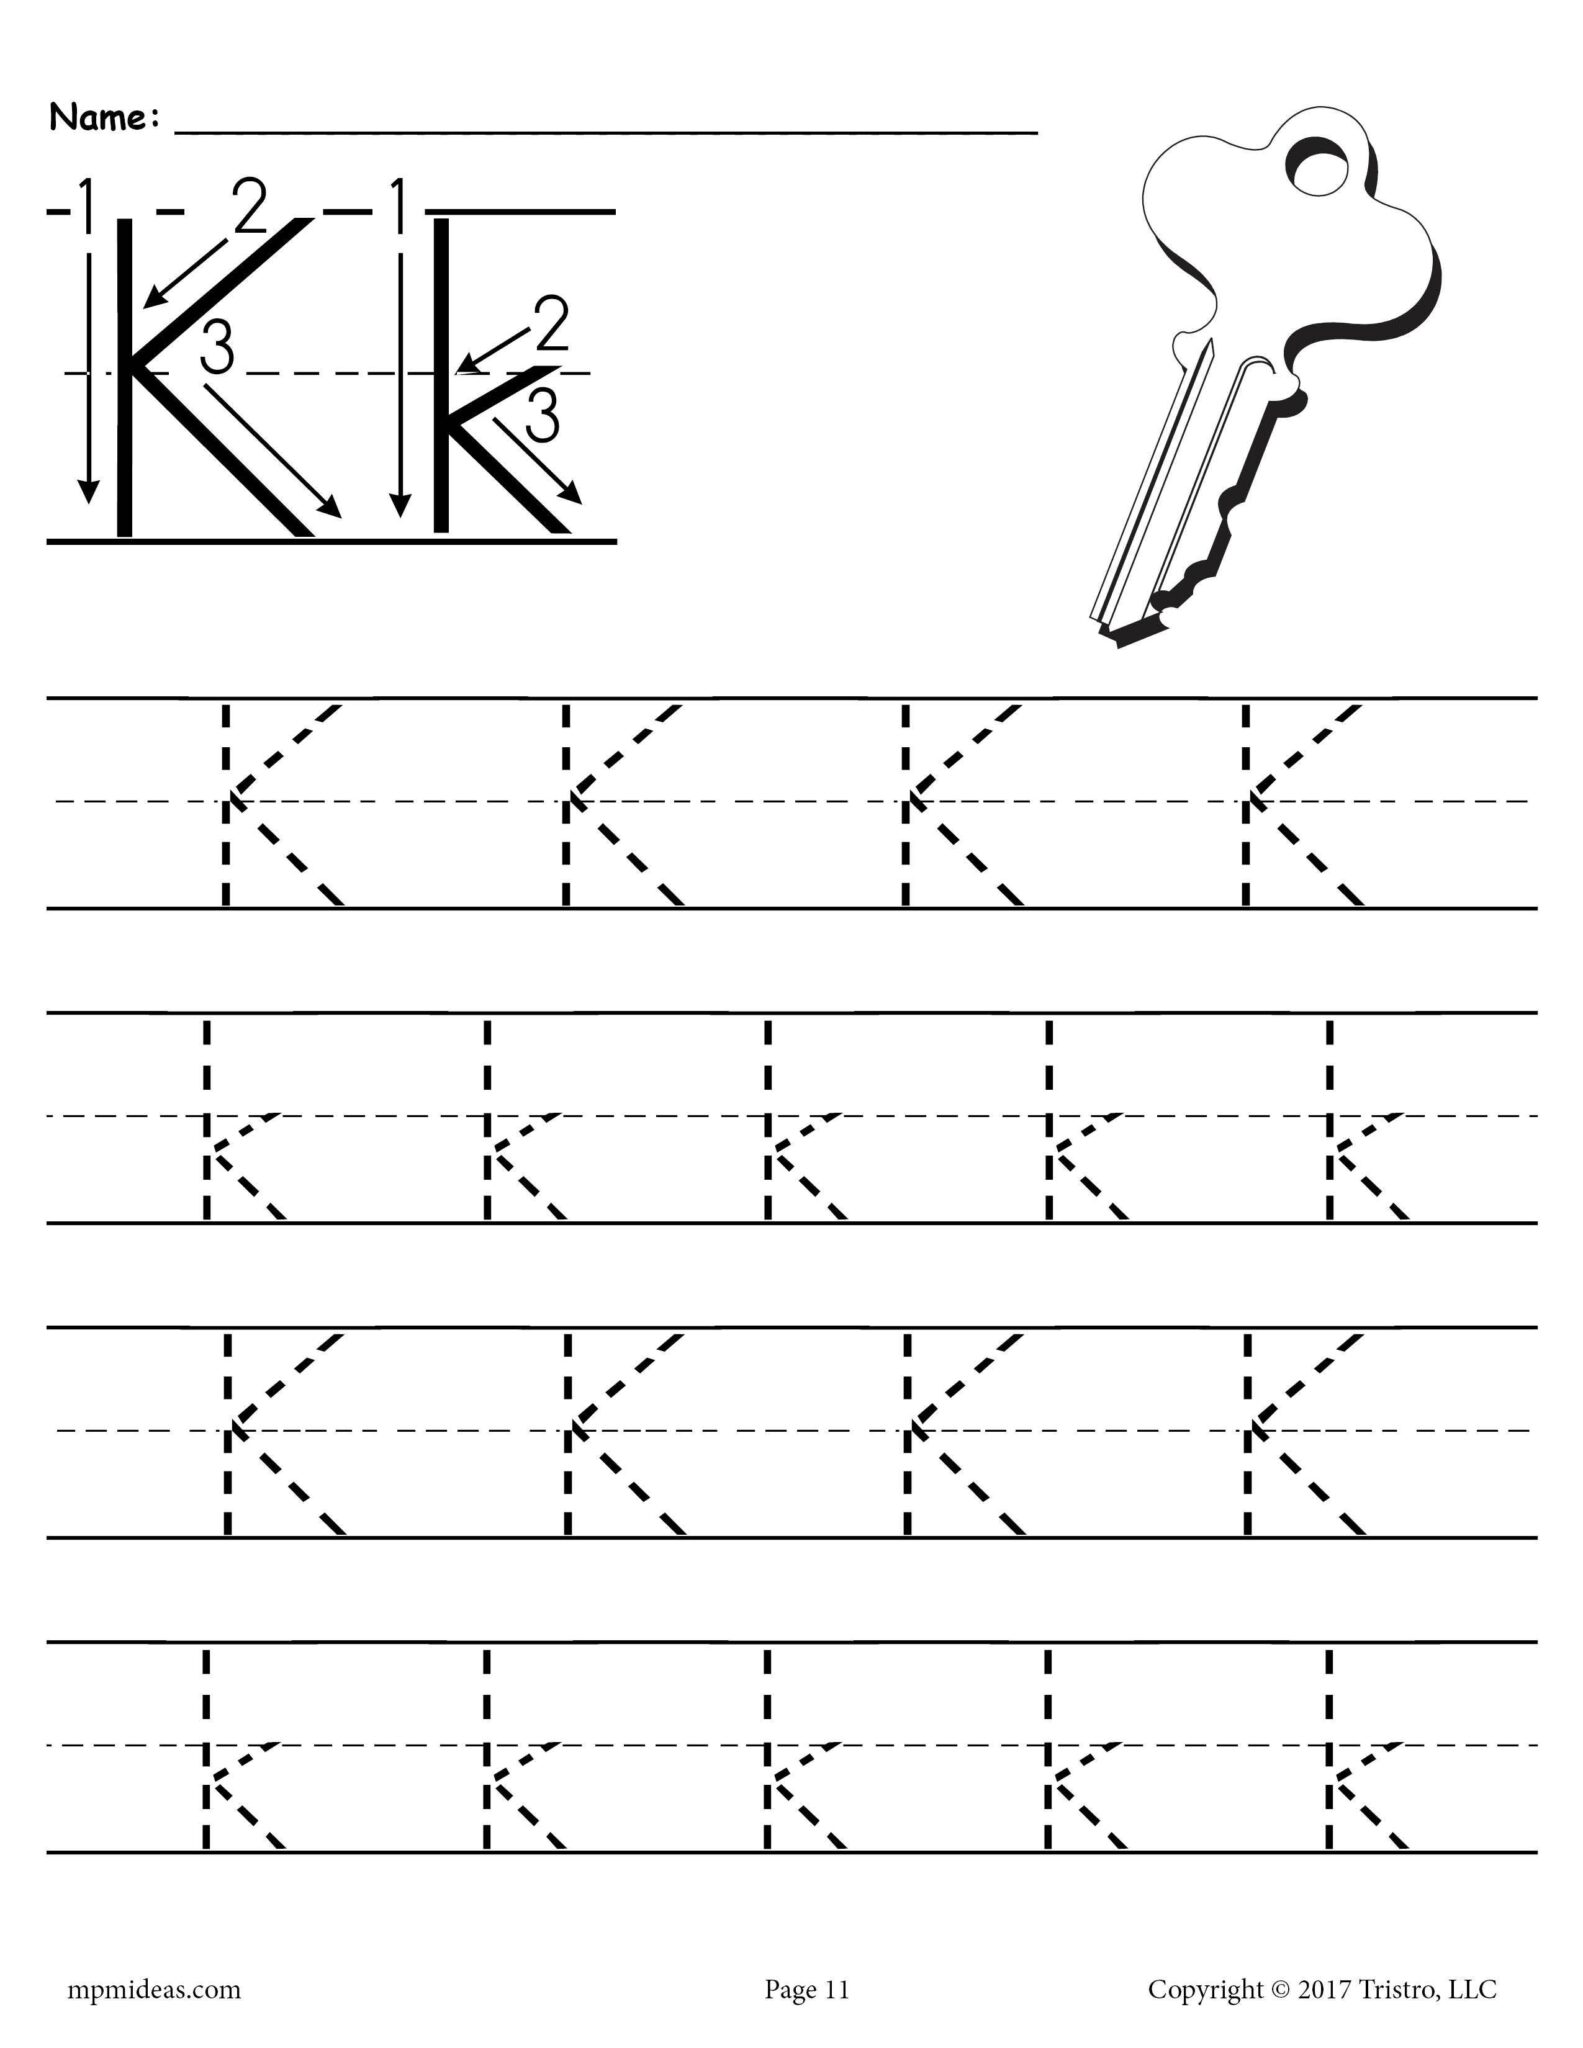 letter-k-crafts-google-search-our-secret-crafts-letter-a-crafts